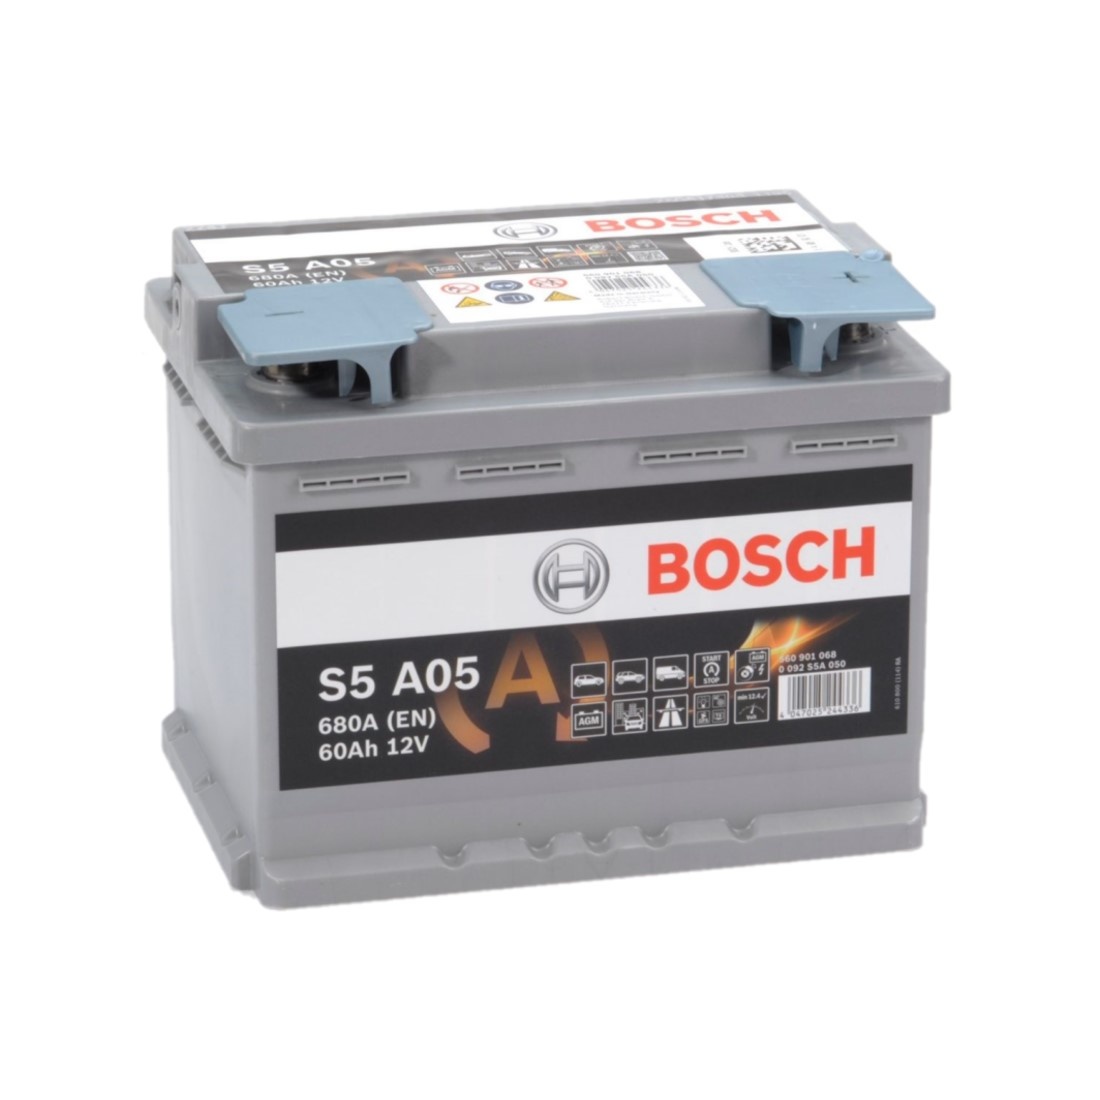 Niet essentieel identificatie wildernis Bosch Auto accu AGM 12 volt 60 ah Type S5A05 - Accu Service Holland